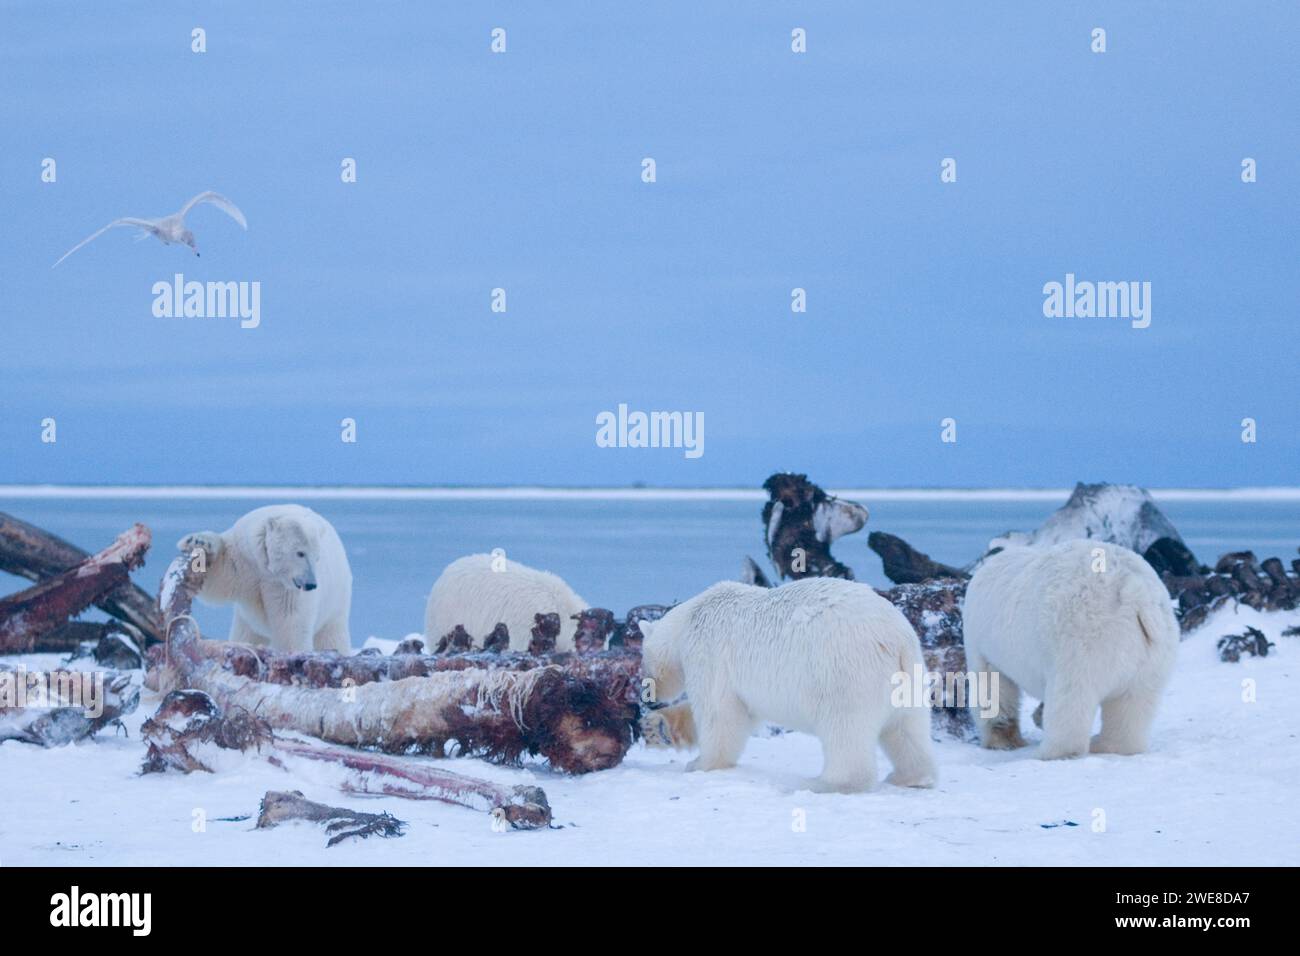 Ours polaires Ursus maritimus truies femelles avec des oursons de chasse sur les os de baleine chasse sur la banquise nouvellement formée chute geler jusqu'à 1002 ANWR Kaktovik AK Banque D'Images